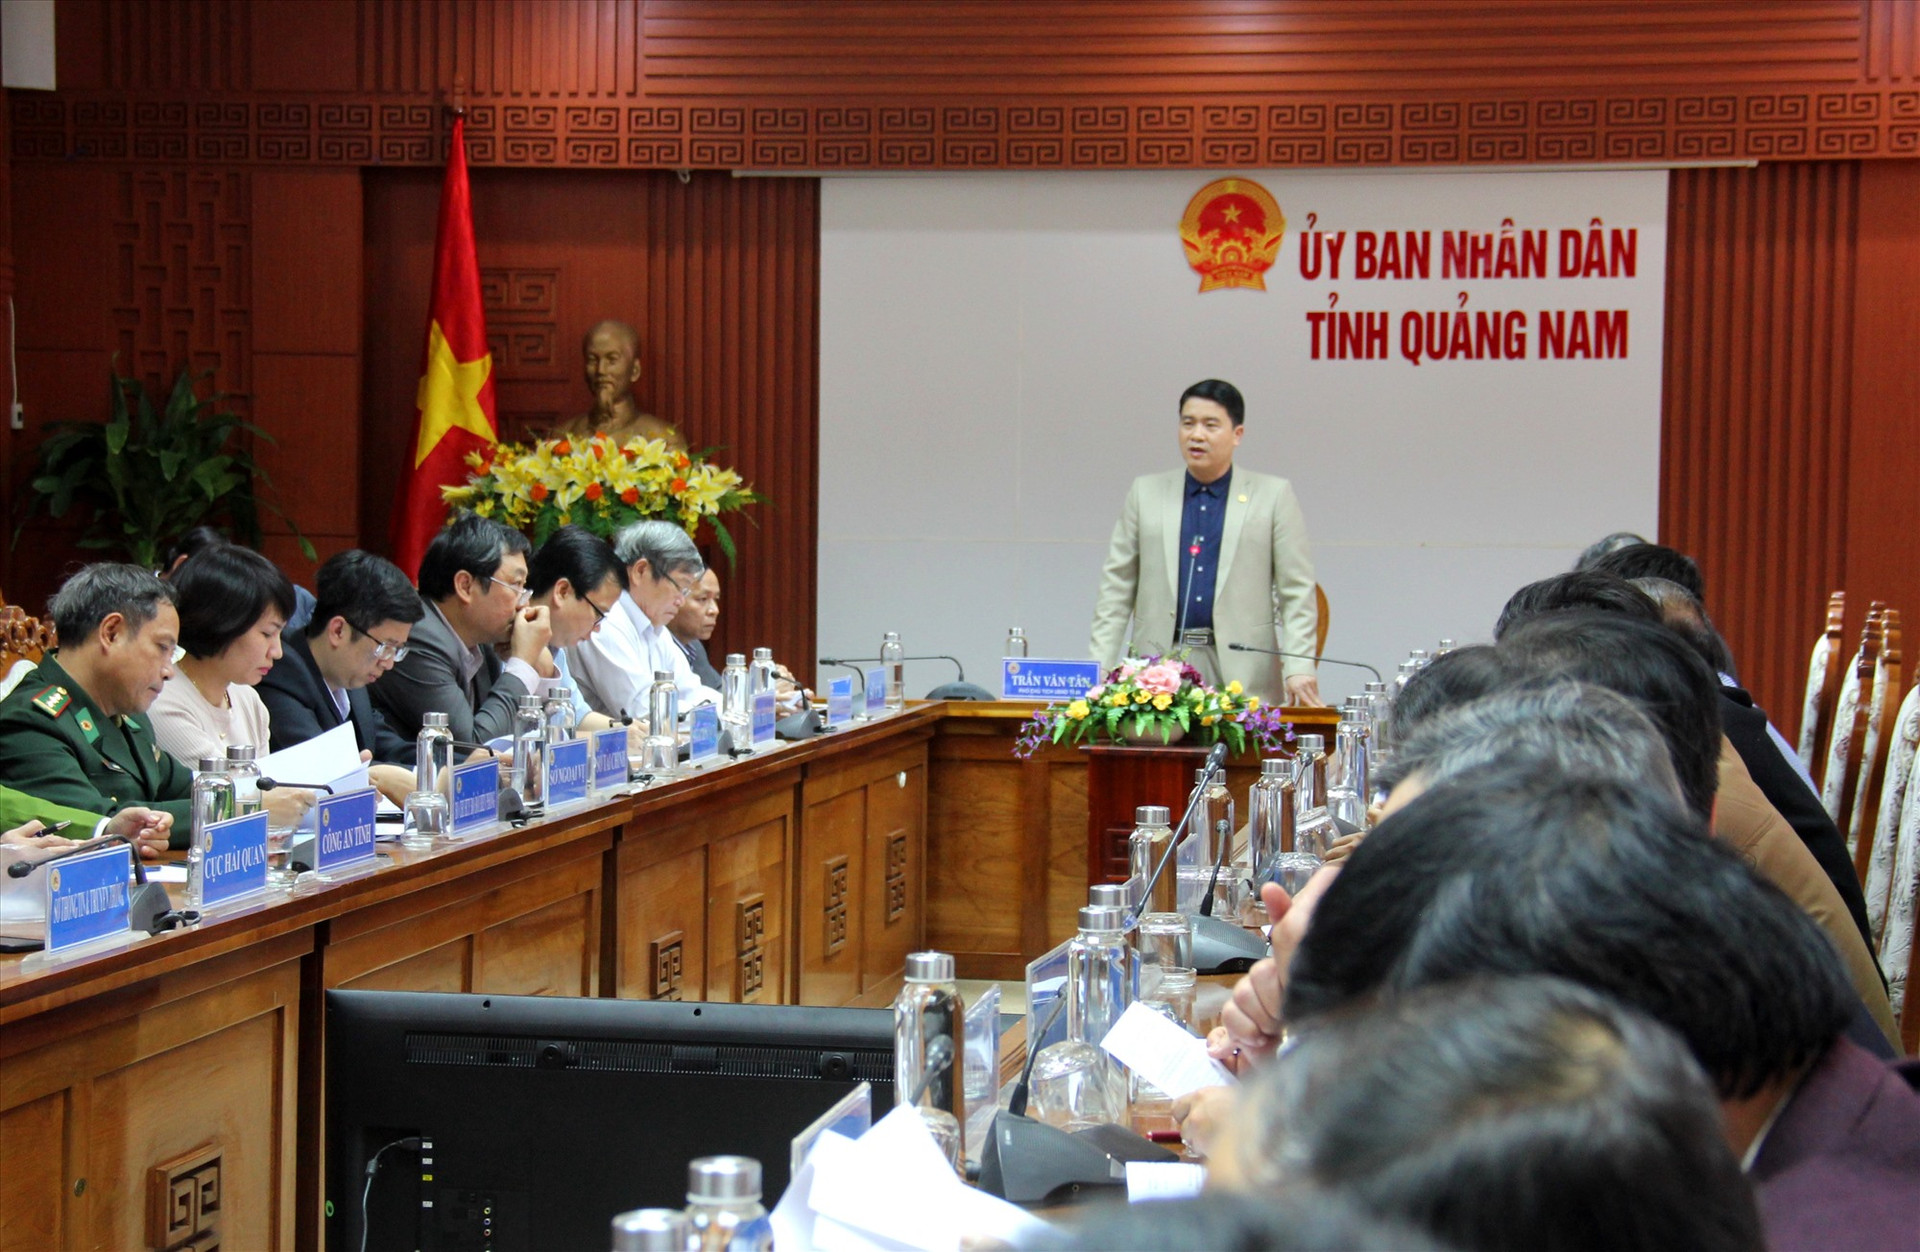 Phó Chủ tịch UBND tỉnh Trần Văn Tân chỉ đạo tại buổi làm việc. Ảnh: A.N